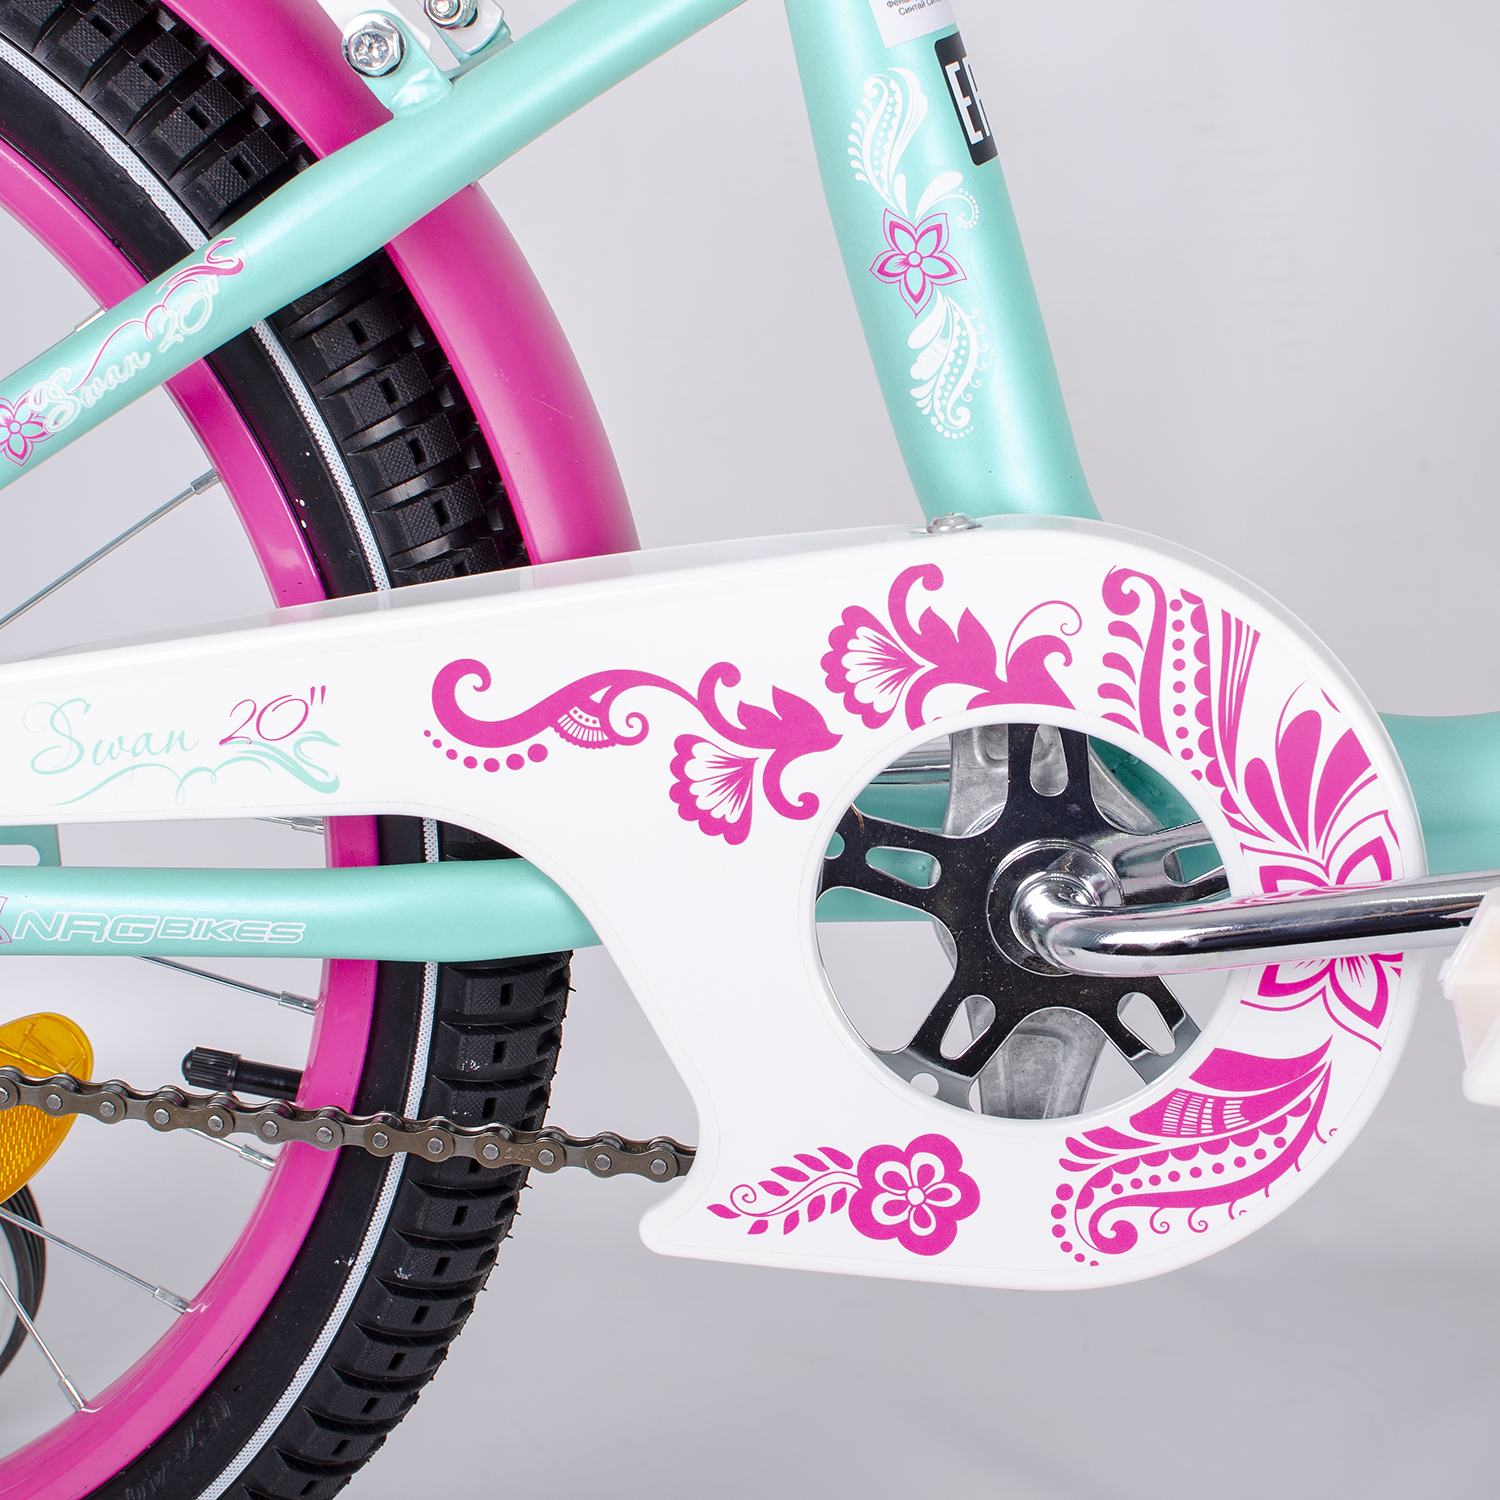 Велосипед NRG BIKES SWAN 20 mint-pink - фото 11